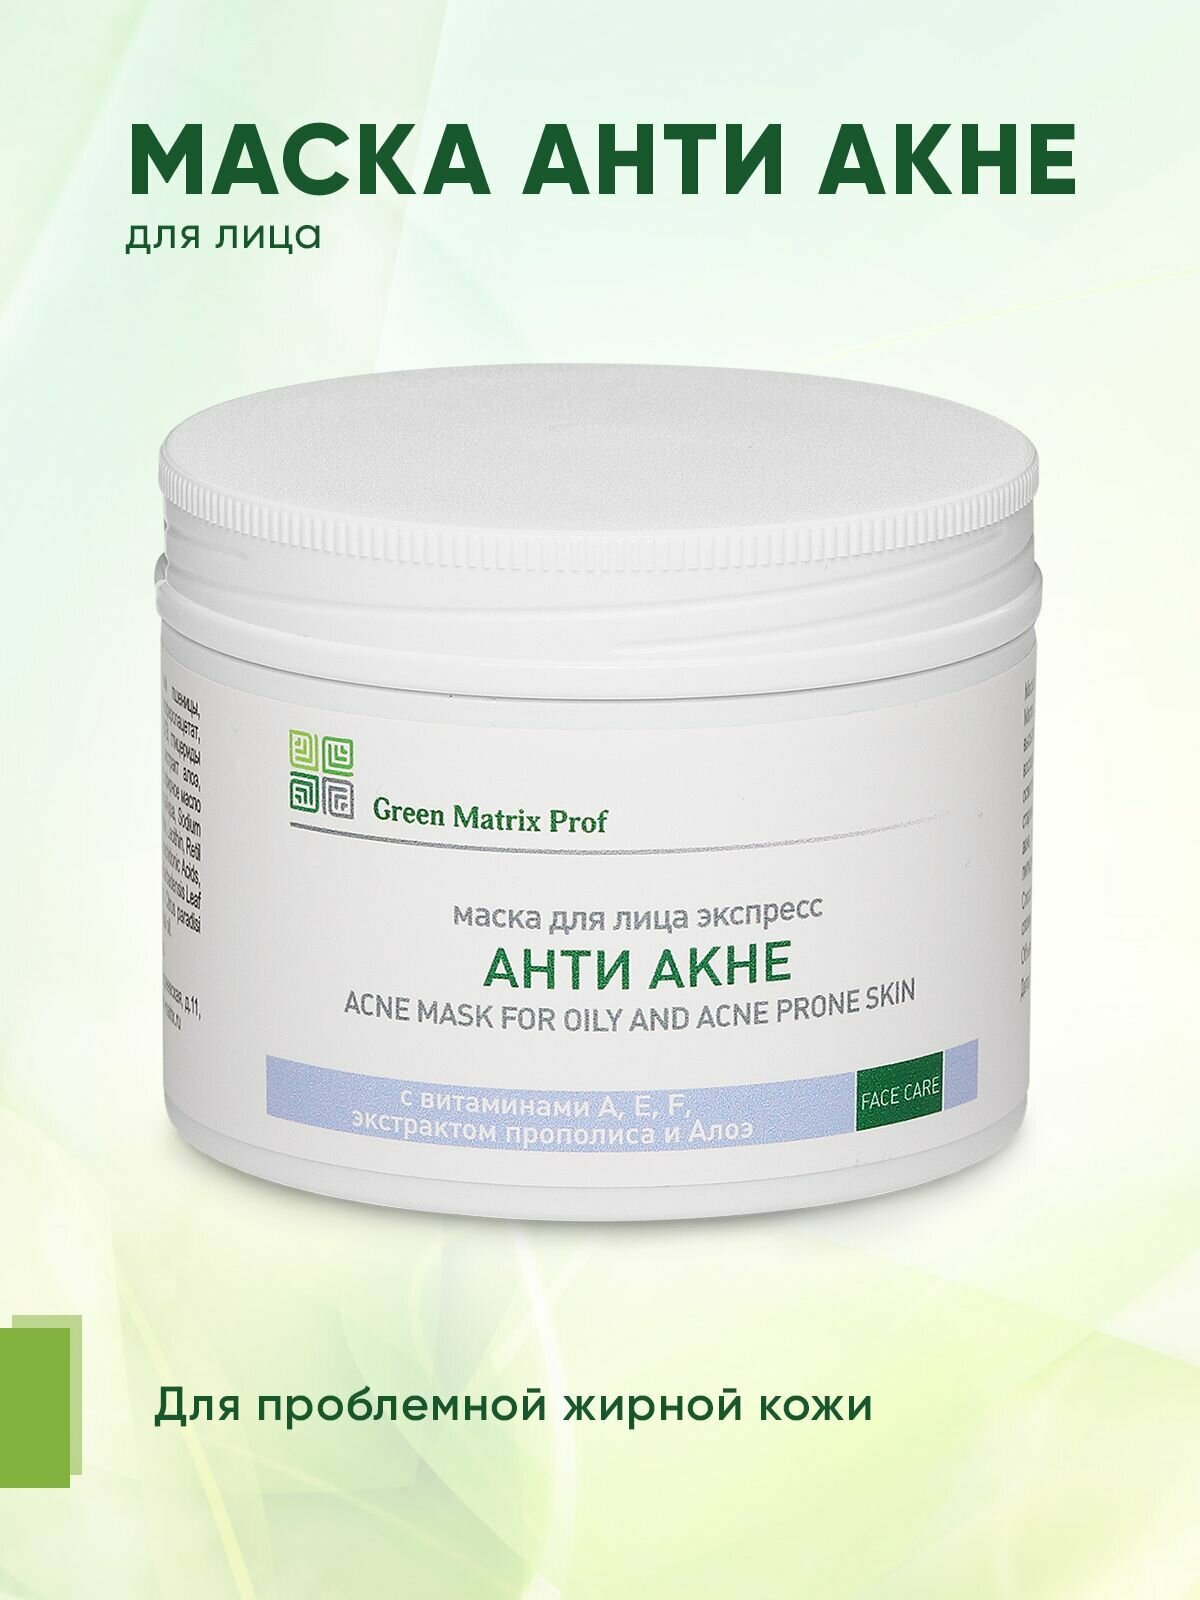 Маска для лица Экспресс Анти Акне Green Matrix Prof для проблемной, склонной к высыпаниям кожи, 150 мл